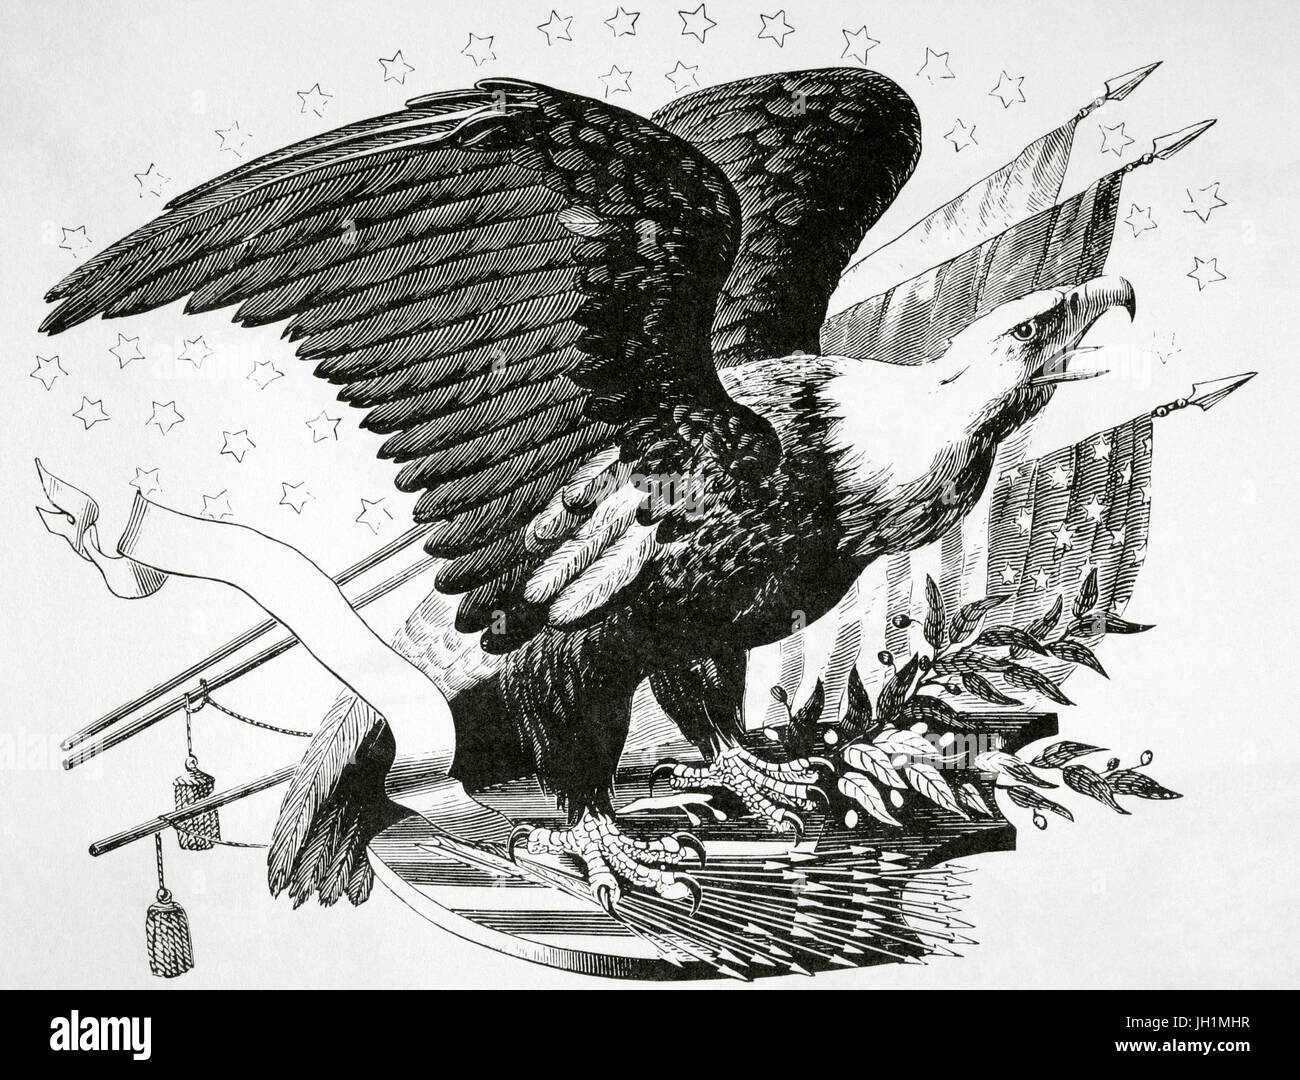 Aquila calva e altri simboli patriottico della guerra rivoluzionaria americana (1775-1783). Incisione della Rivoluzione Americana, xix secolo. Foto Stock